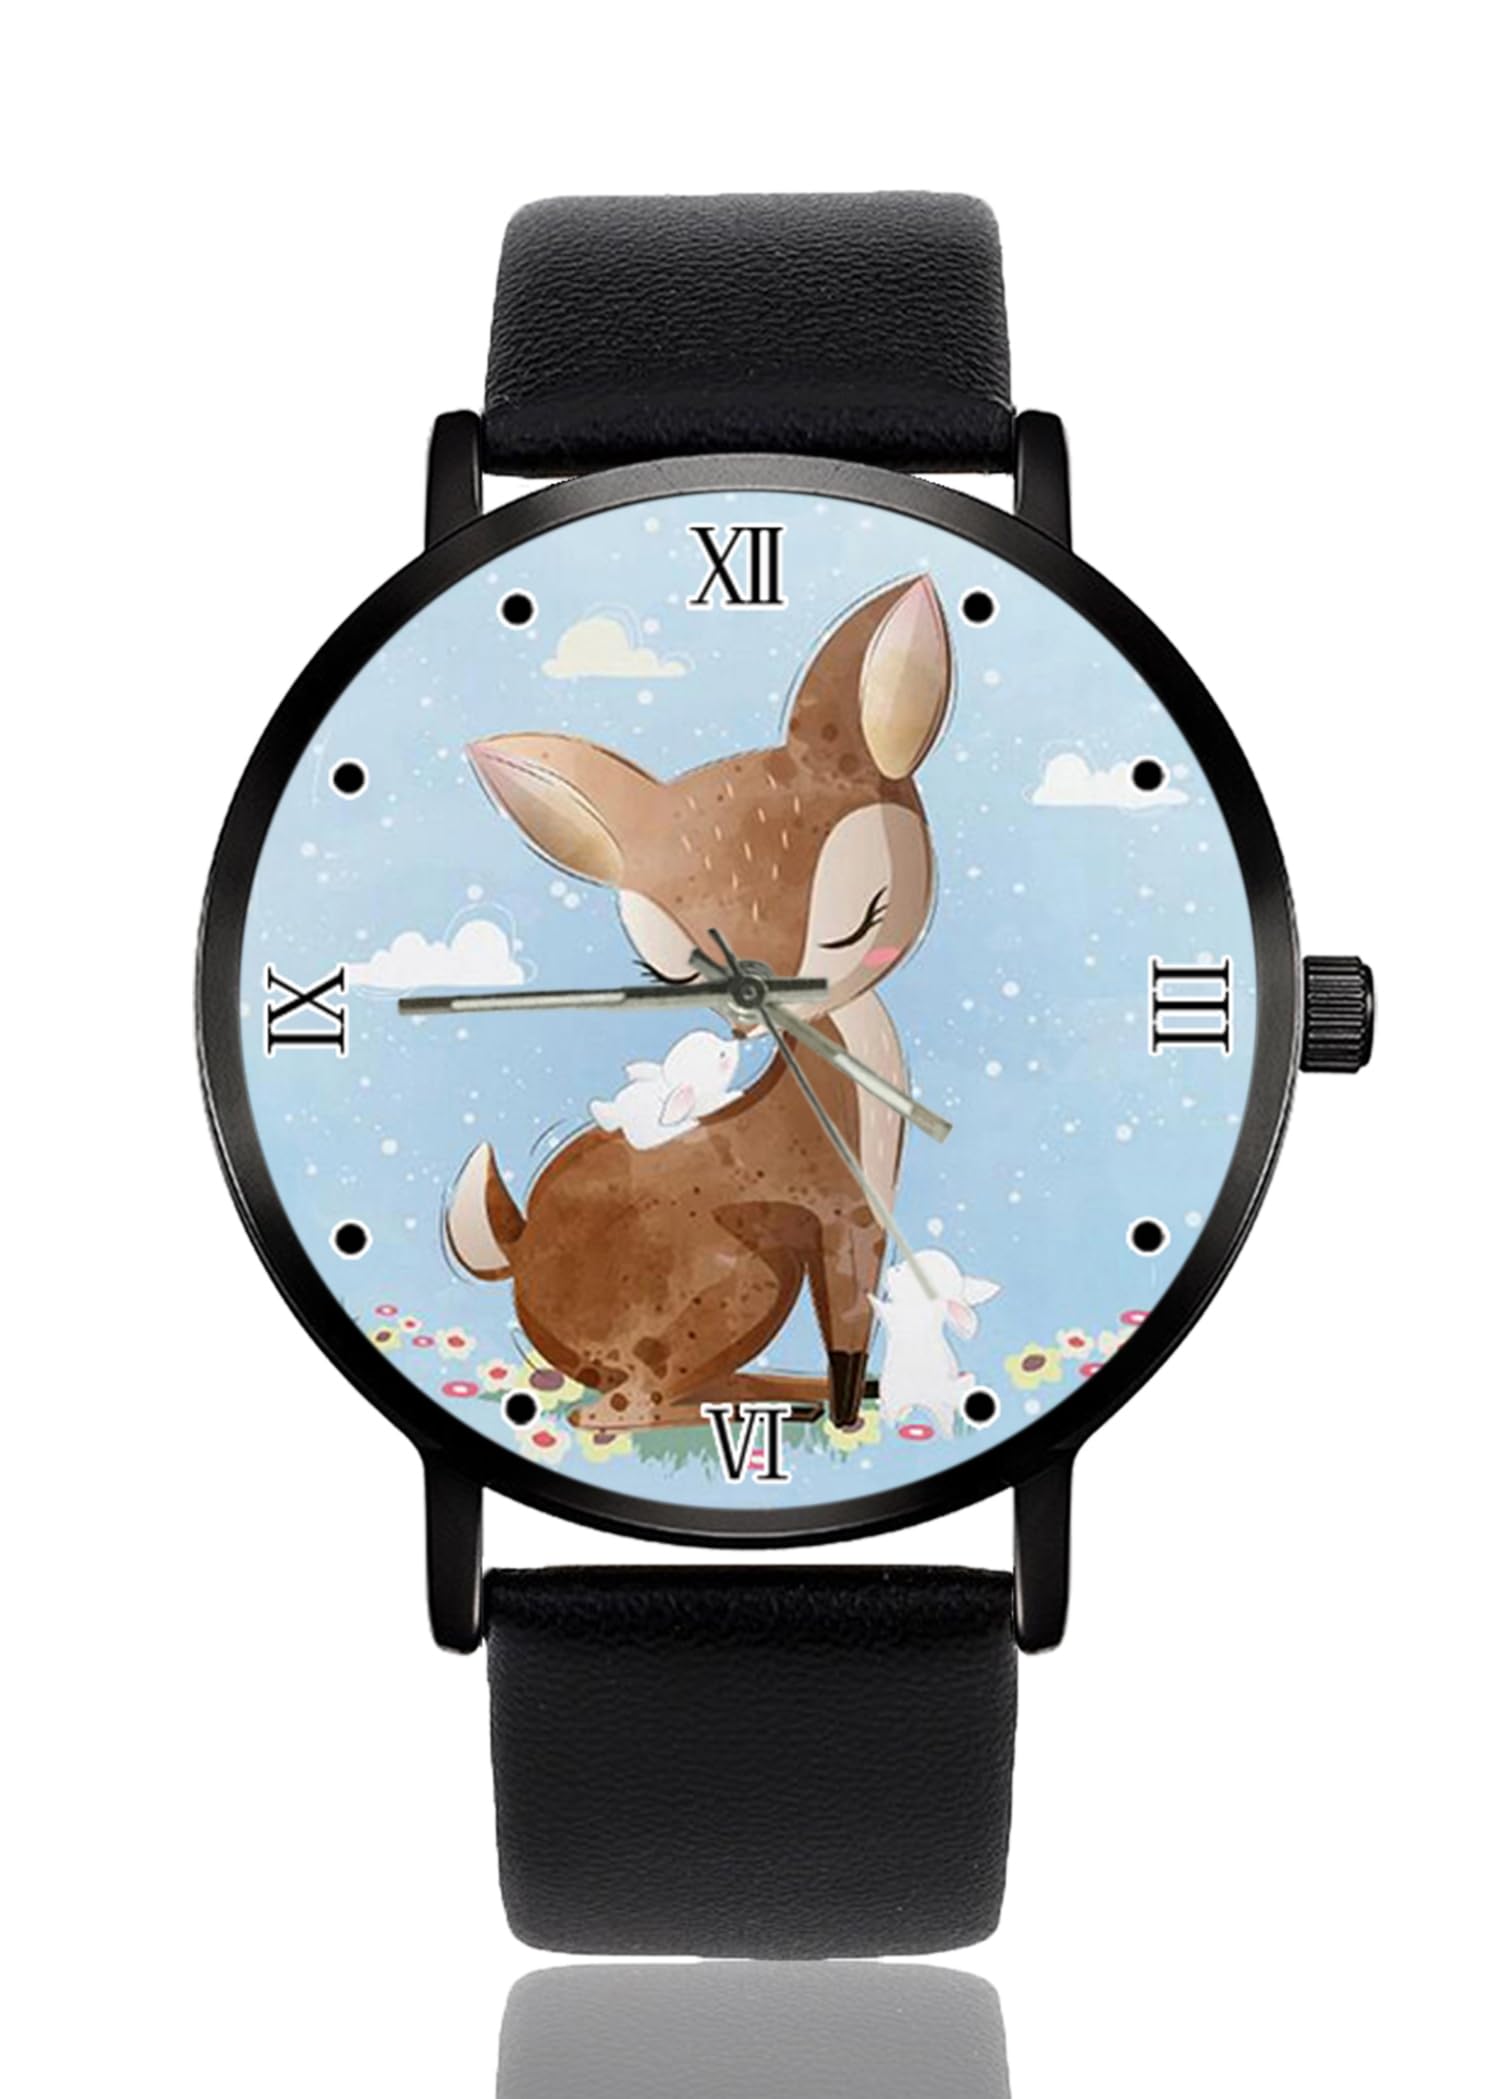 Uhr Personalisierte benutzerdefinierte Uhren Casual Schwarz Lederband Armbanduhren für Männer Frauen Unisex, Niedliche Hirschkunst